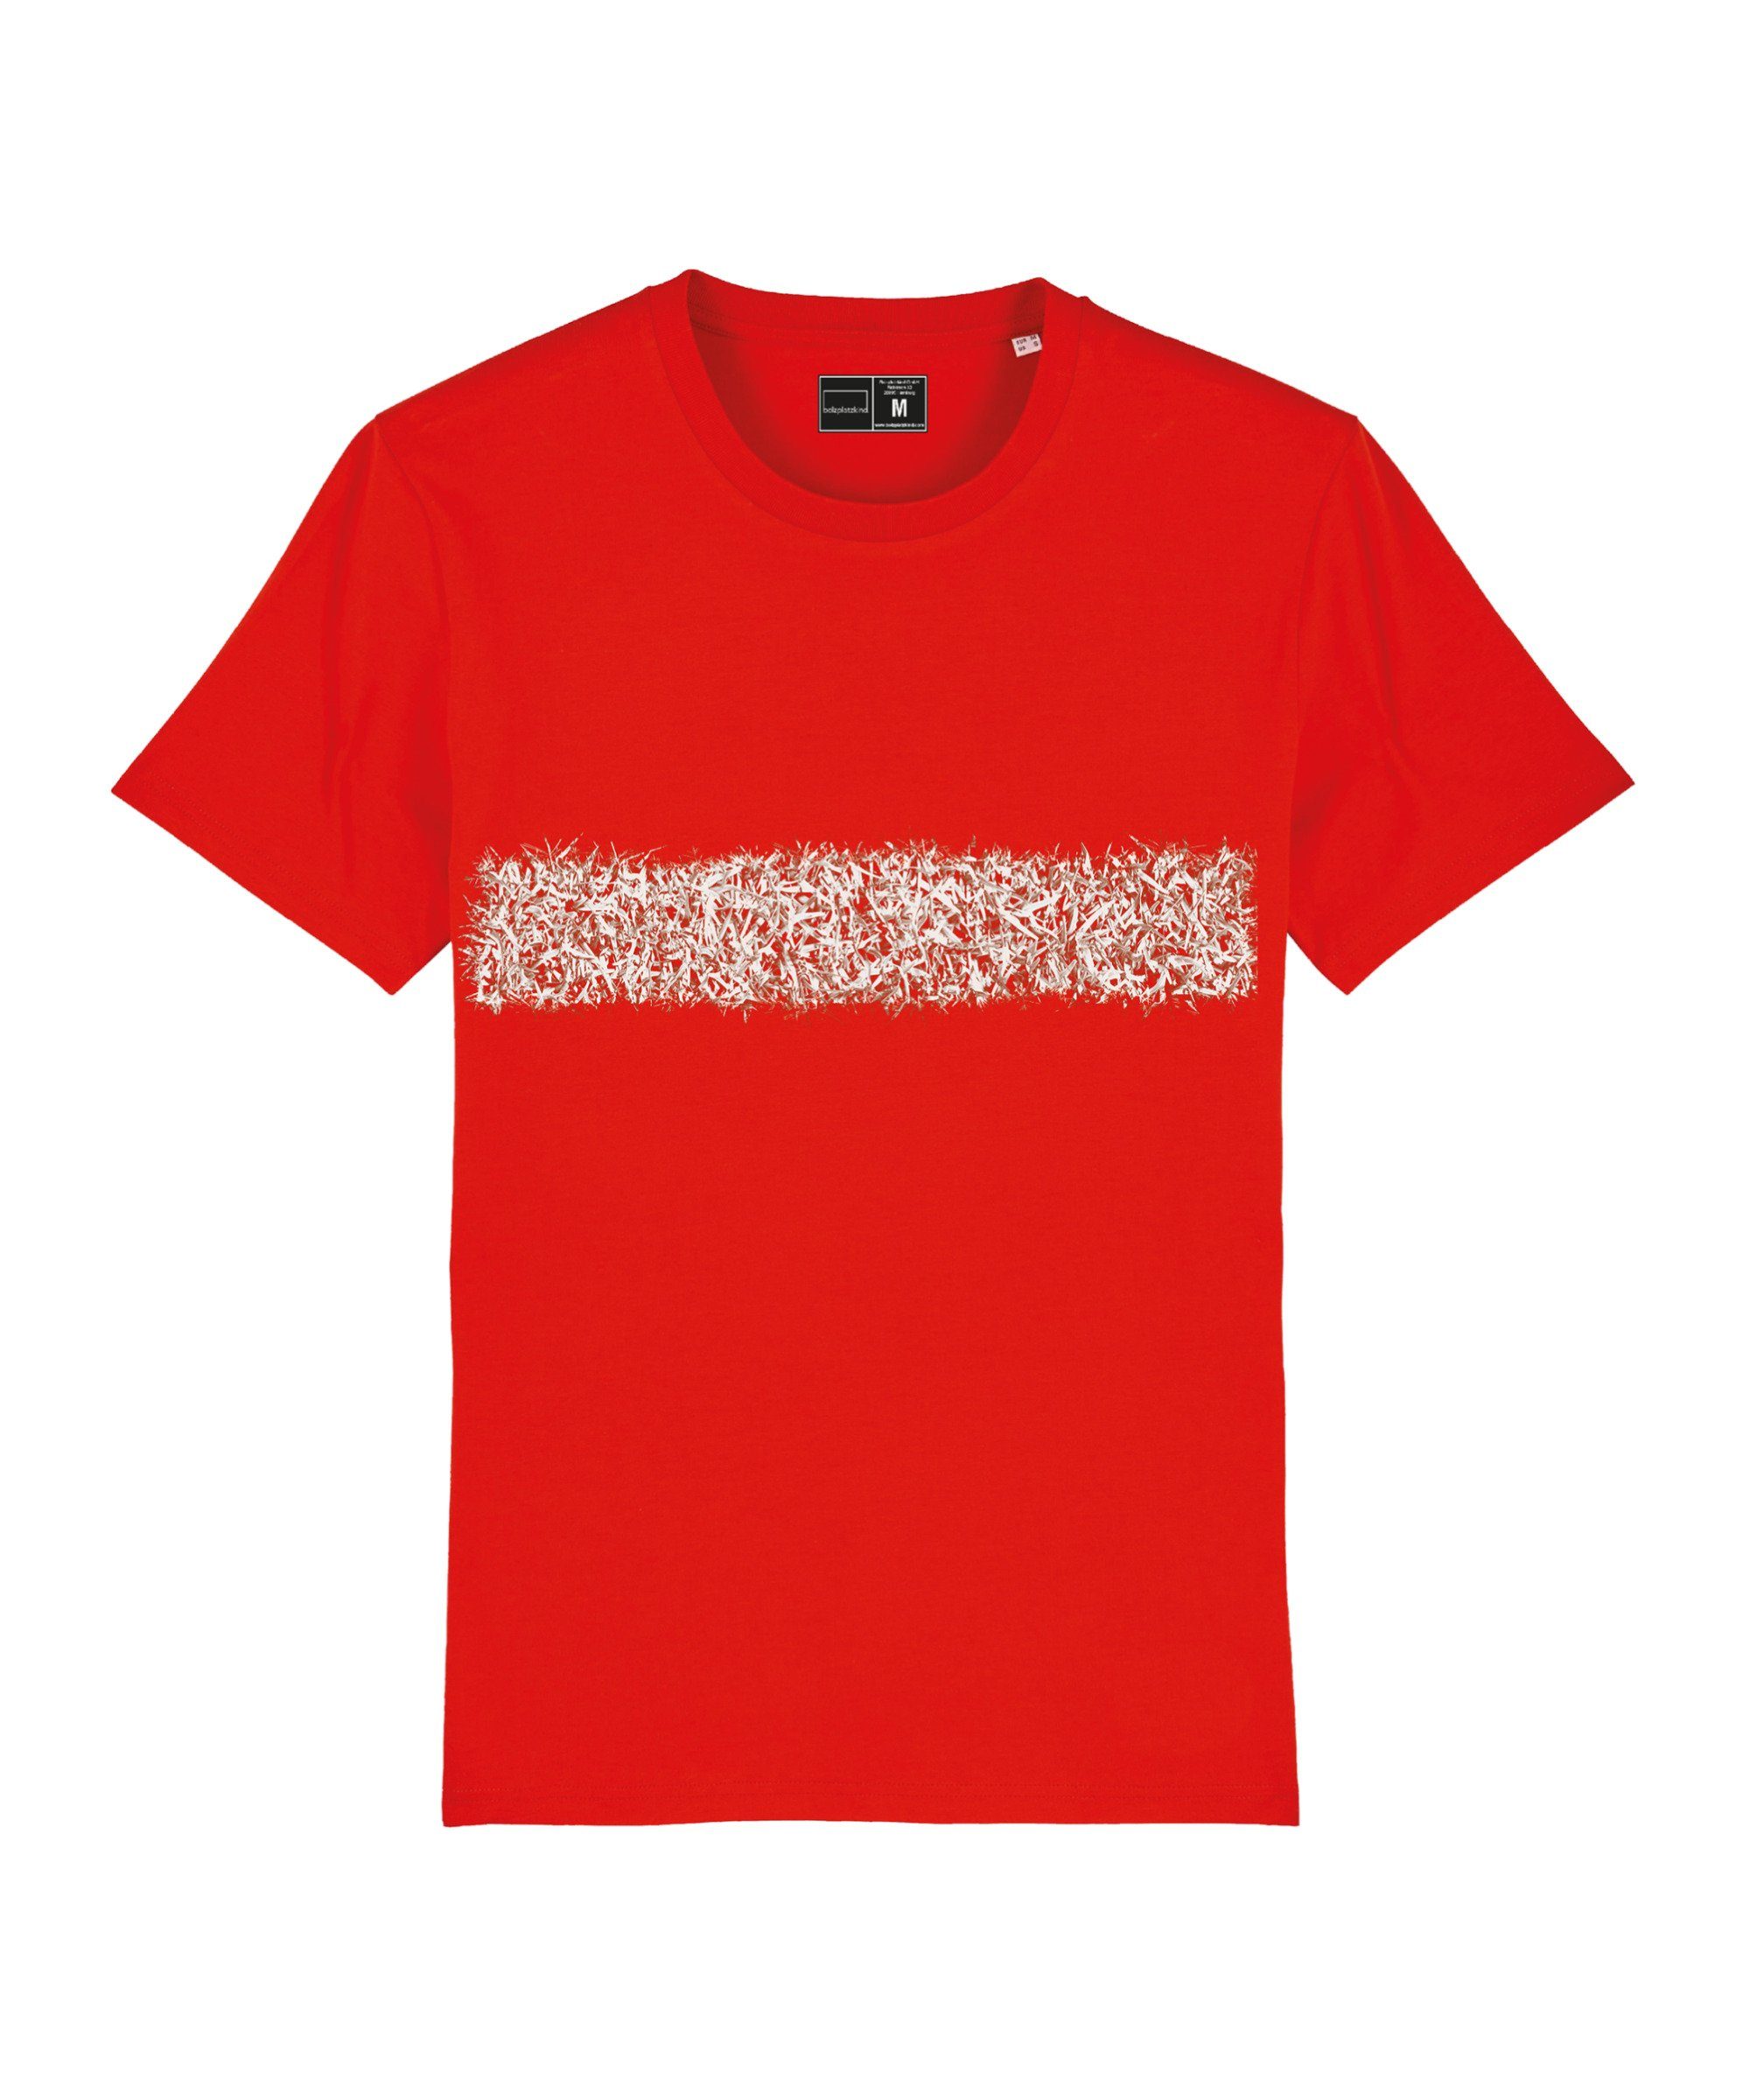 Bolzplatzkind T-Shirt "Line-Up" T-Shirt Nachhaltiges Produkt rot